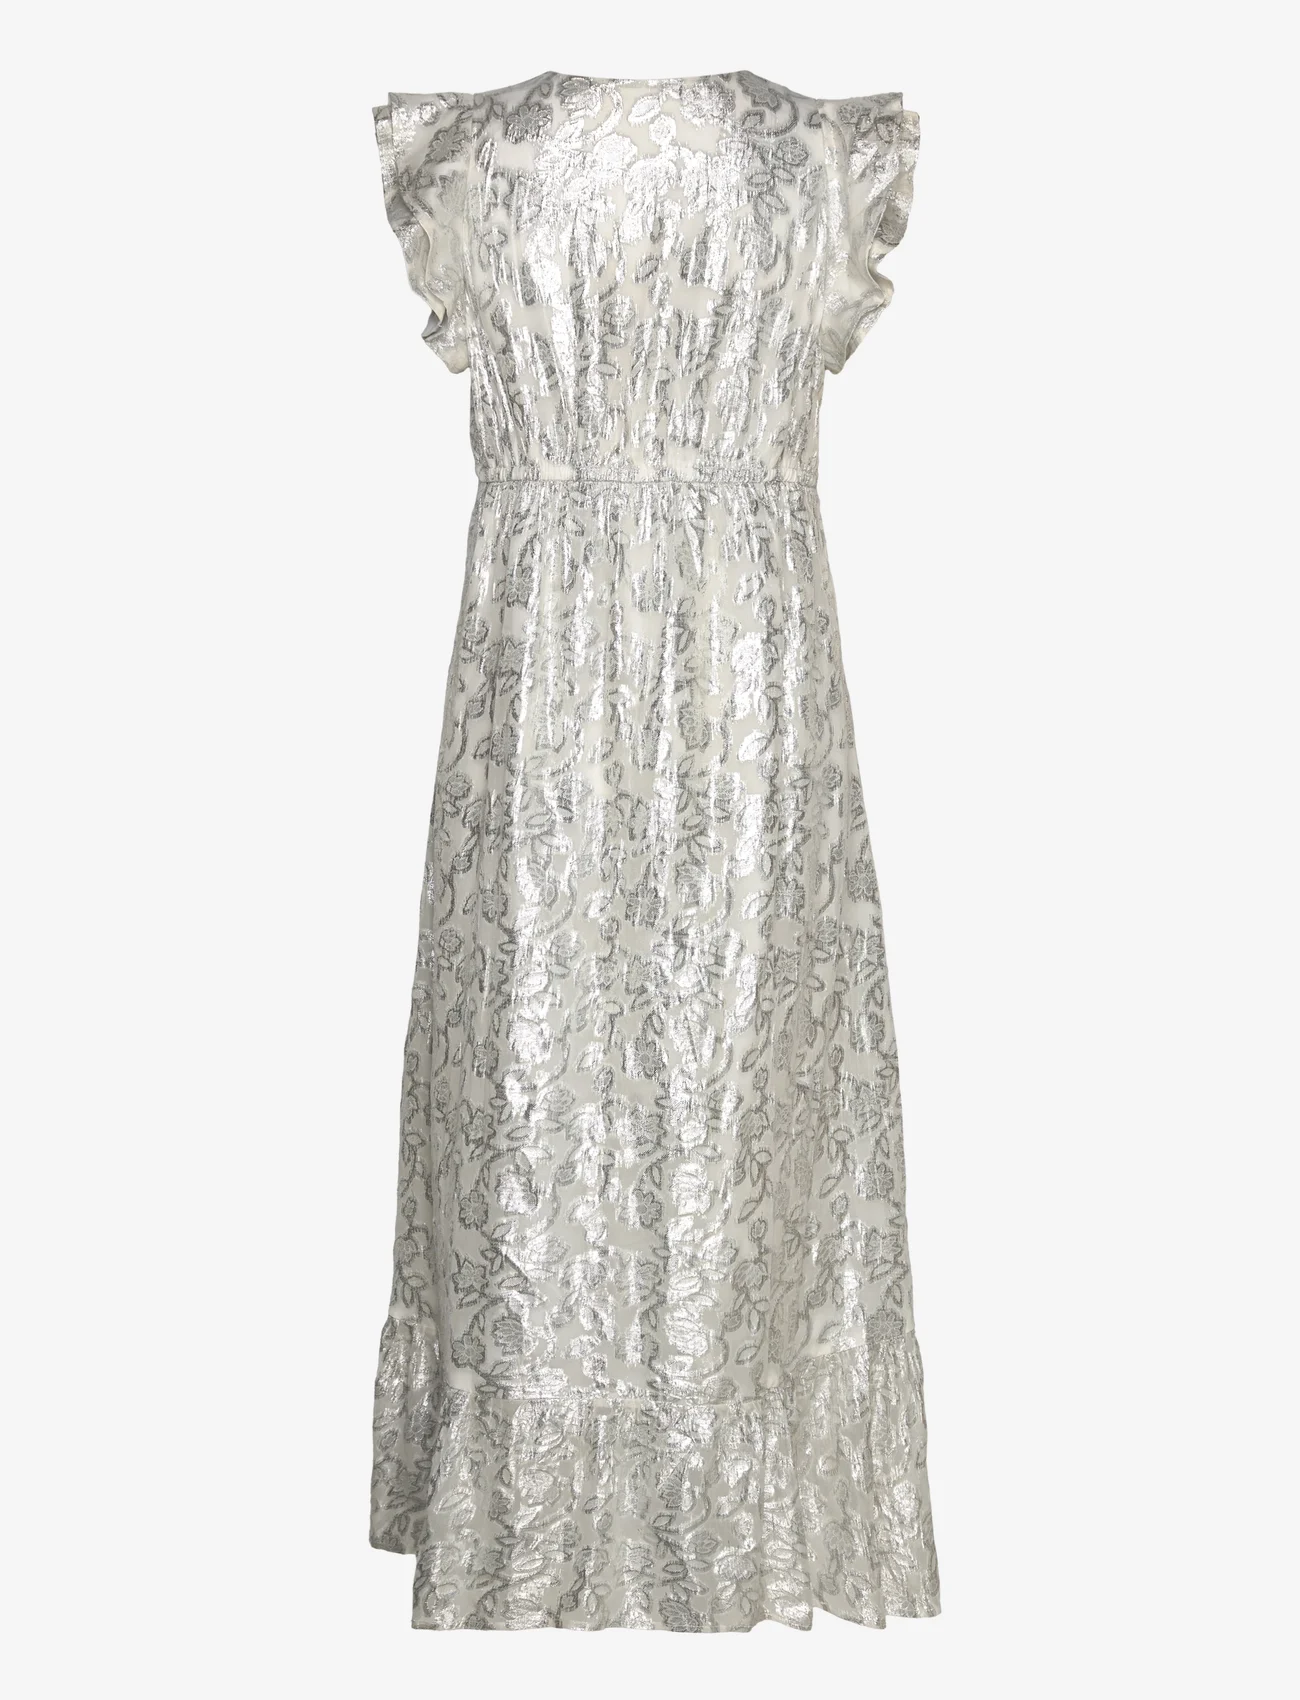 Sofie Schnoor - Dress - antique white - 1